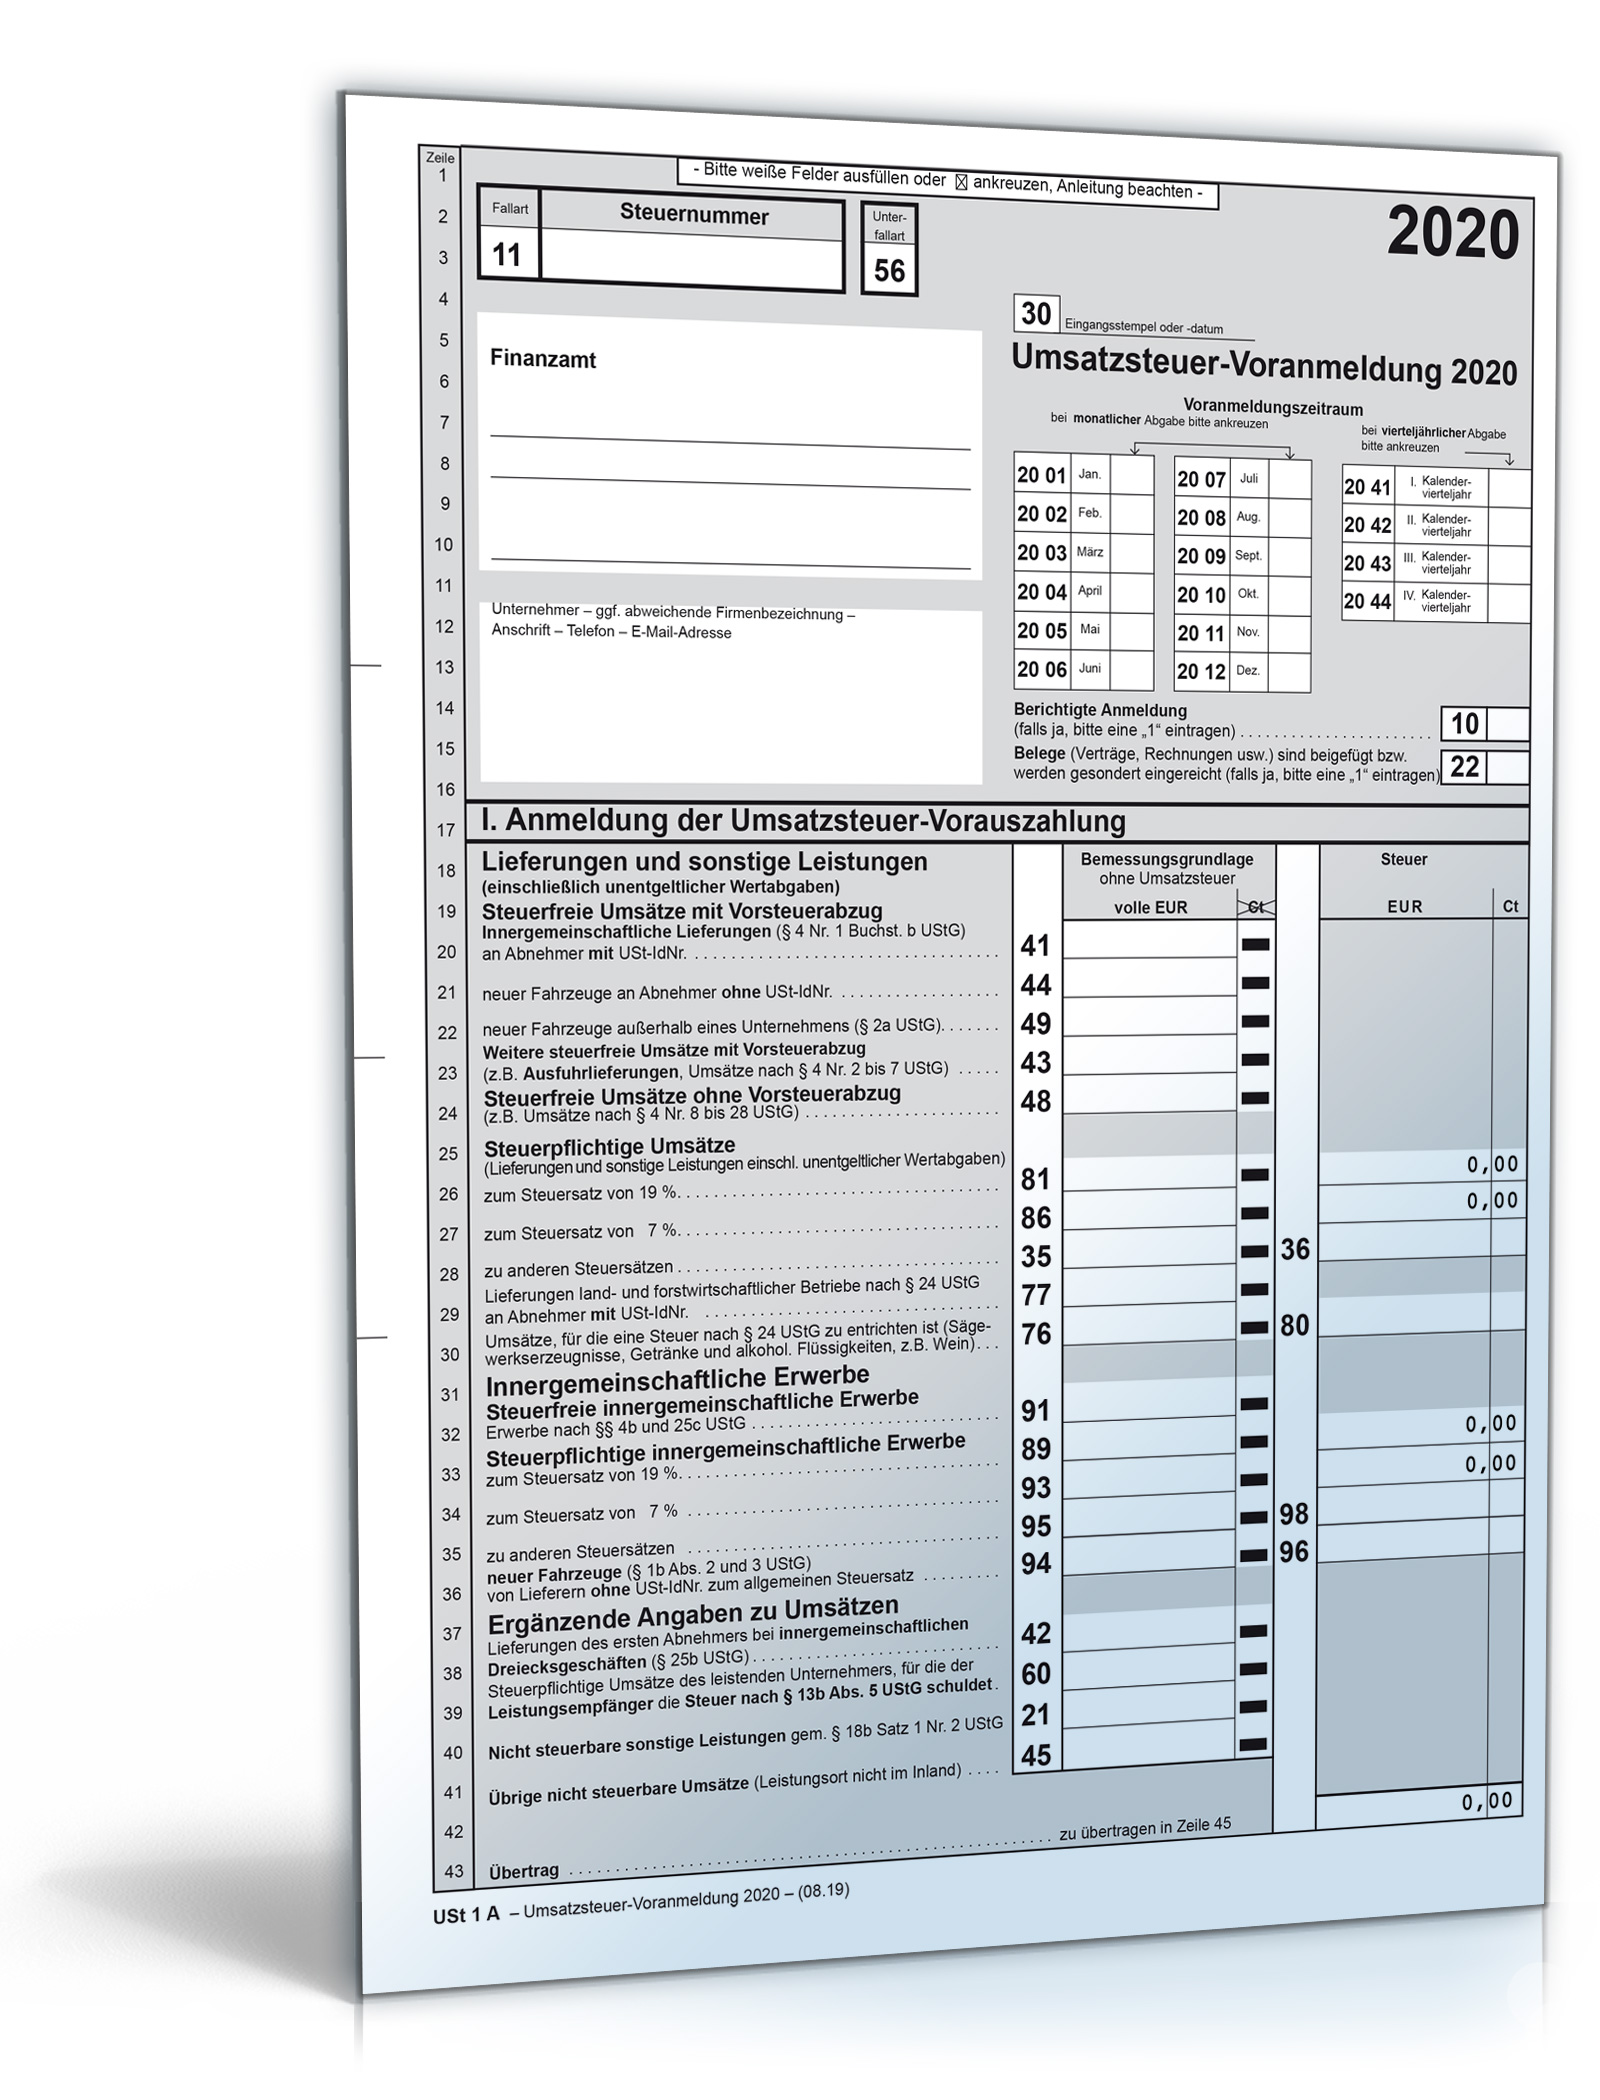 Umsatzsteuer Voranmeldung 2020 Steuerformular Zum Download